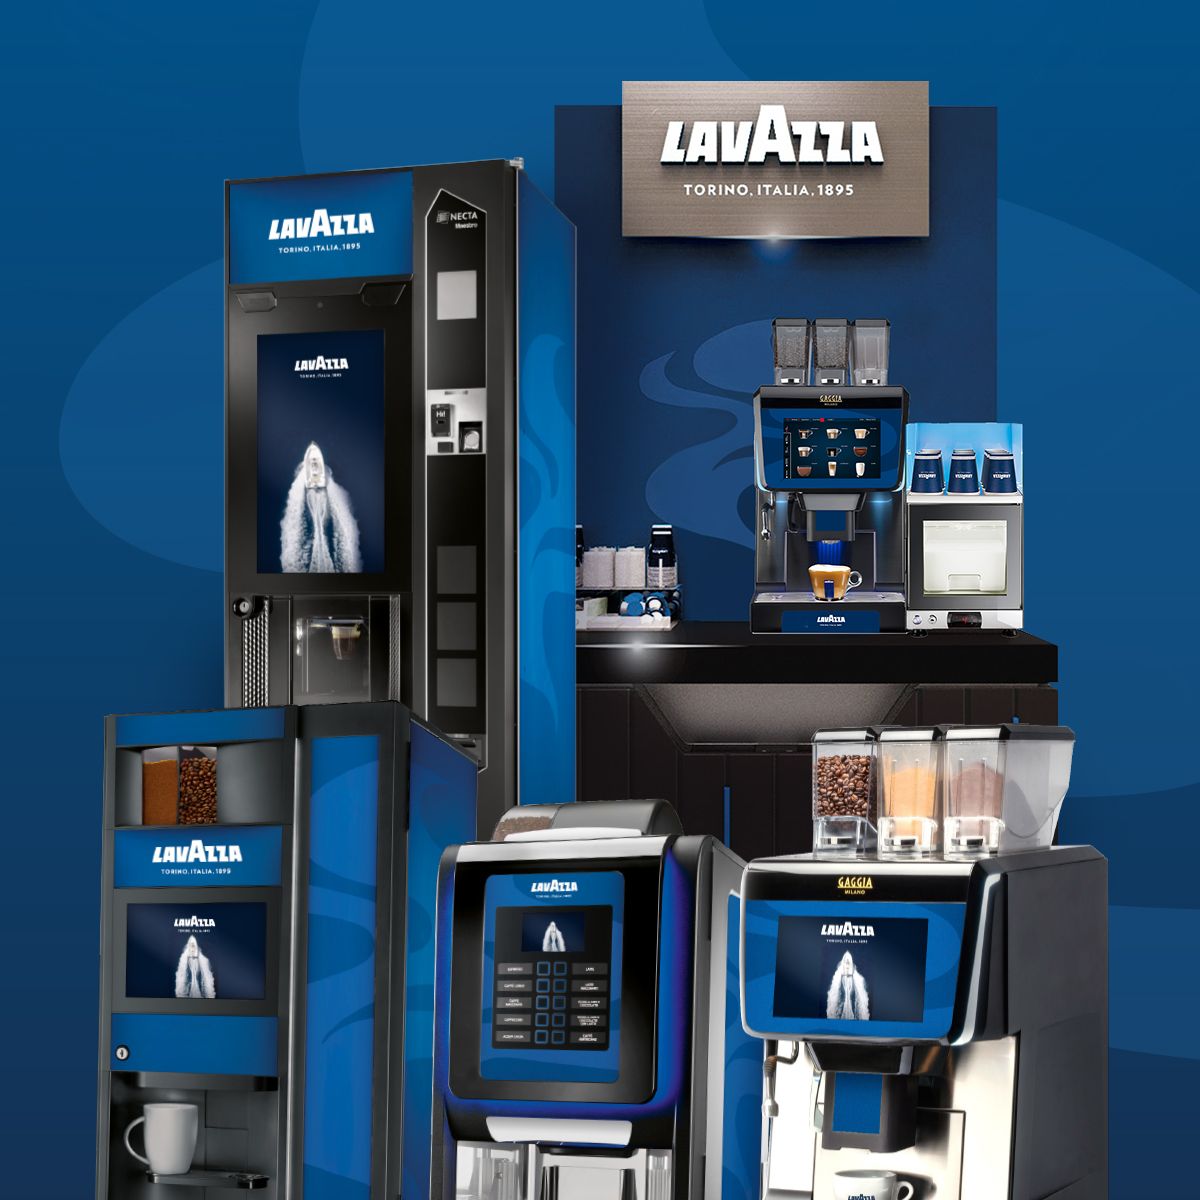 Machine à café en grains professionnelle : KREA - Lavazza Professional